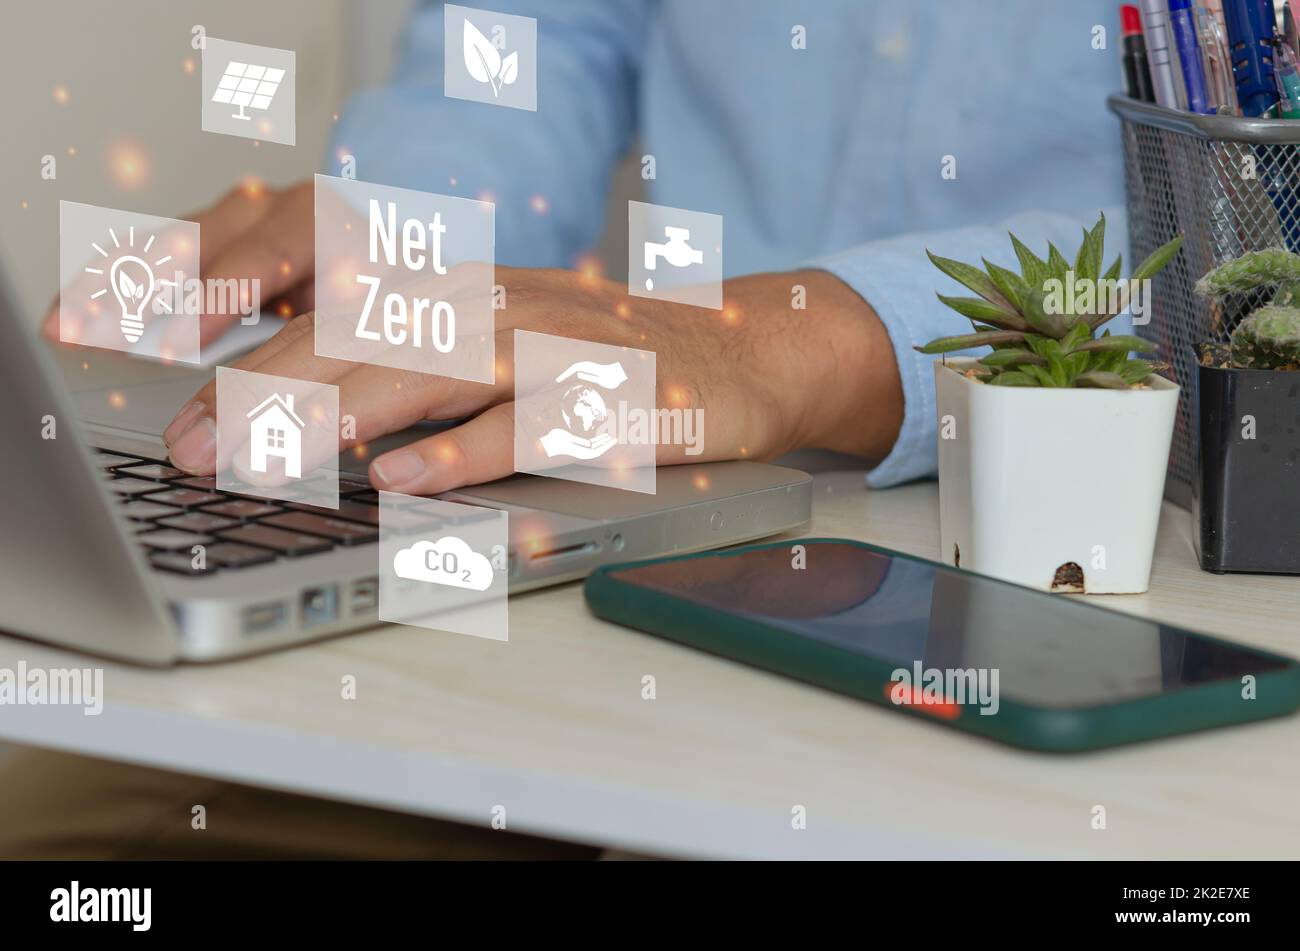 Mann Hand mit Laptop zu arbeiten Technologie und Geschäft concept.NET NULL Symbole und Symbole speichern die Öko-Welt und reduzieren Umweltverschmutzung virtuellen Bildschirm. Stockfoto